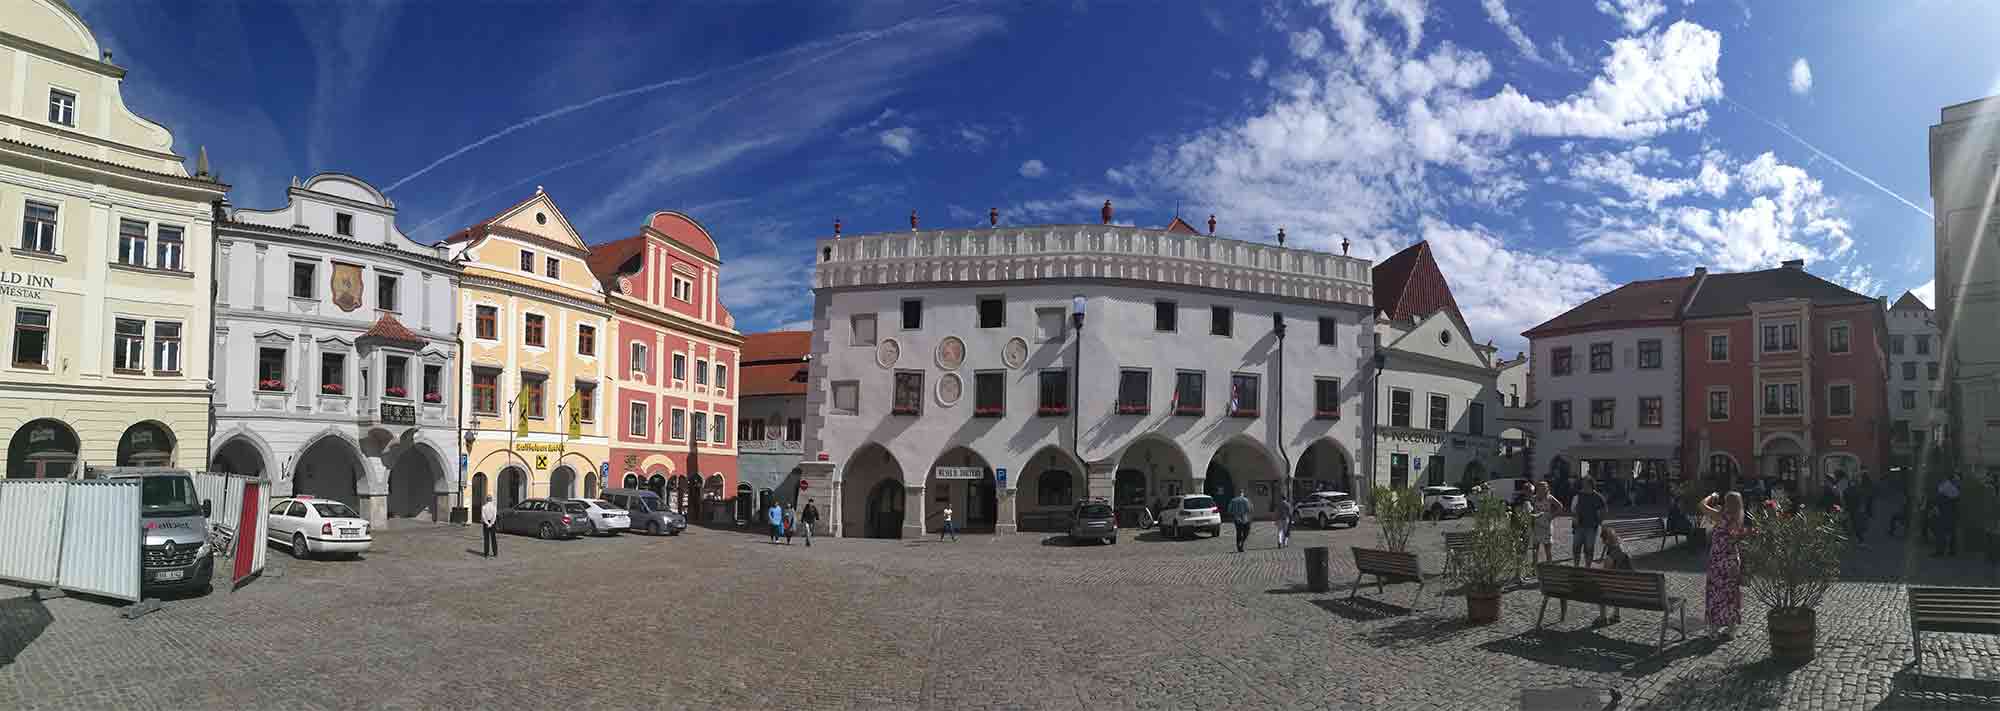 Malebné náměstí v Českém Krumlově